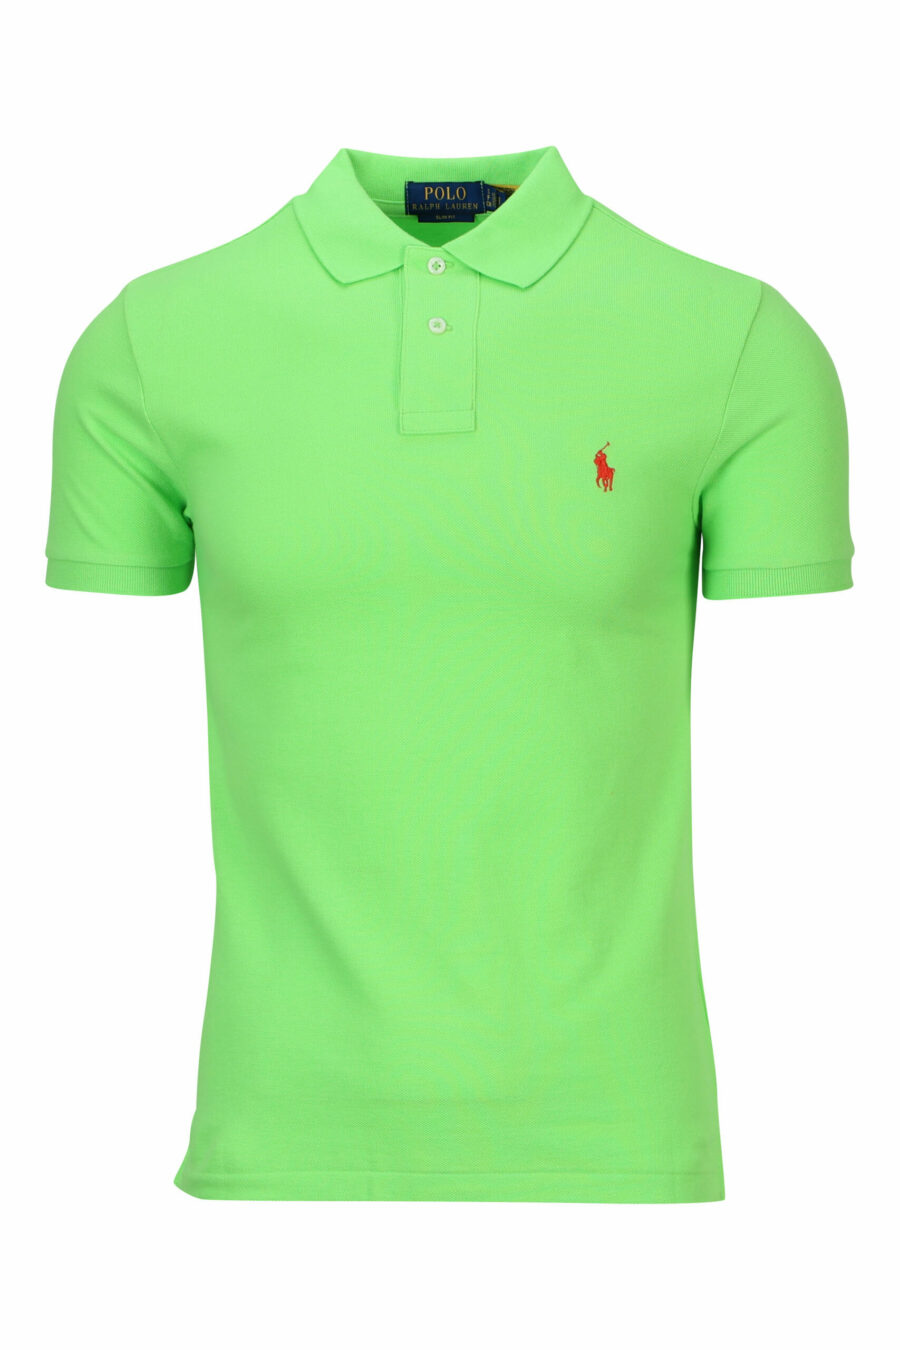 Polo vert clair avec mini-logo "polo" - 3616411864338